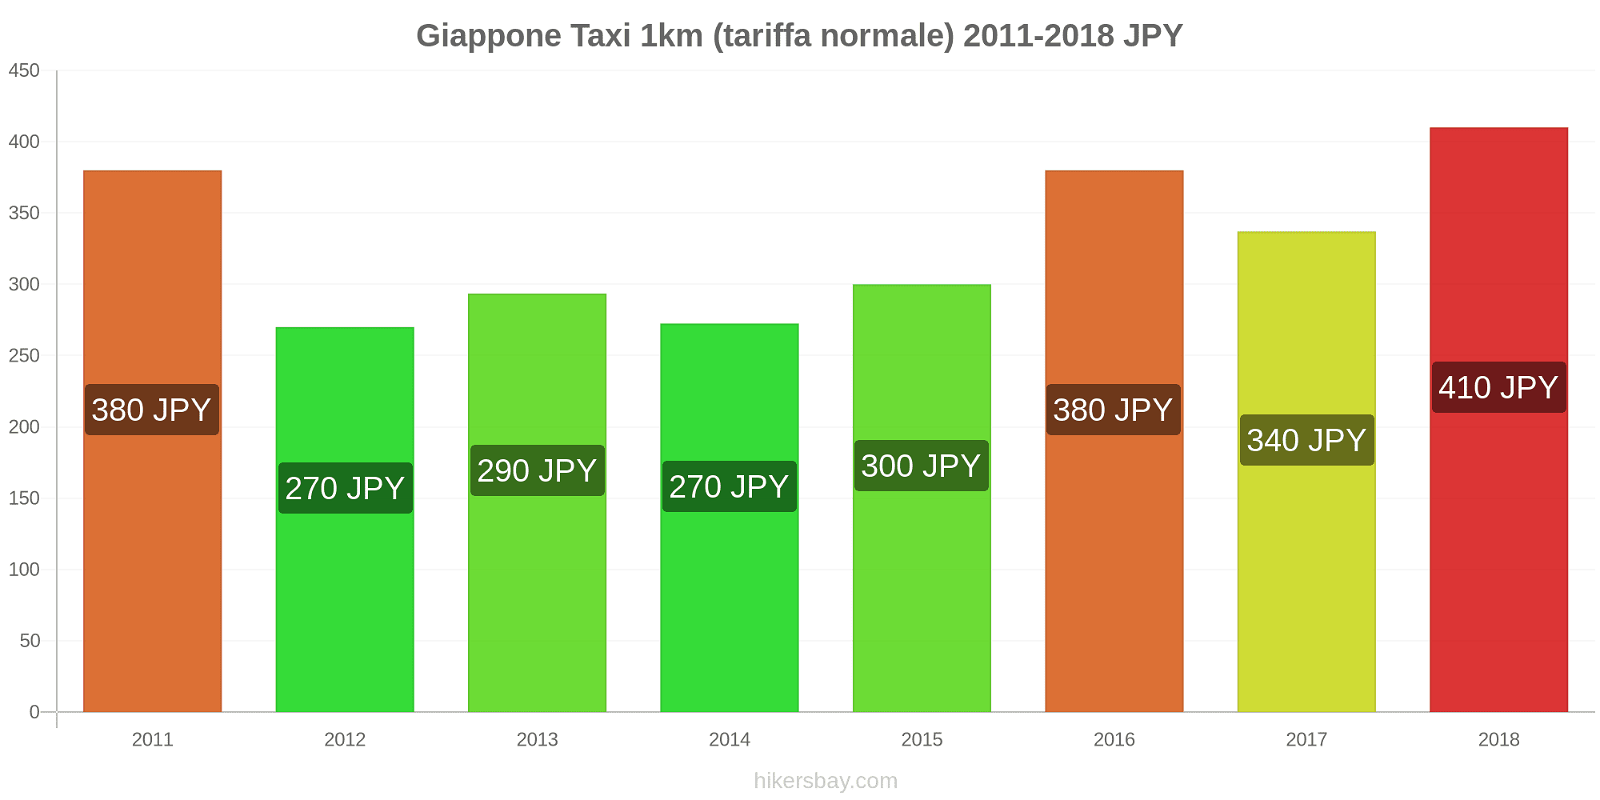 Giappone cambi di prezzo Taxi 1km (tariffa normale) hikersbay.com